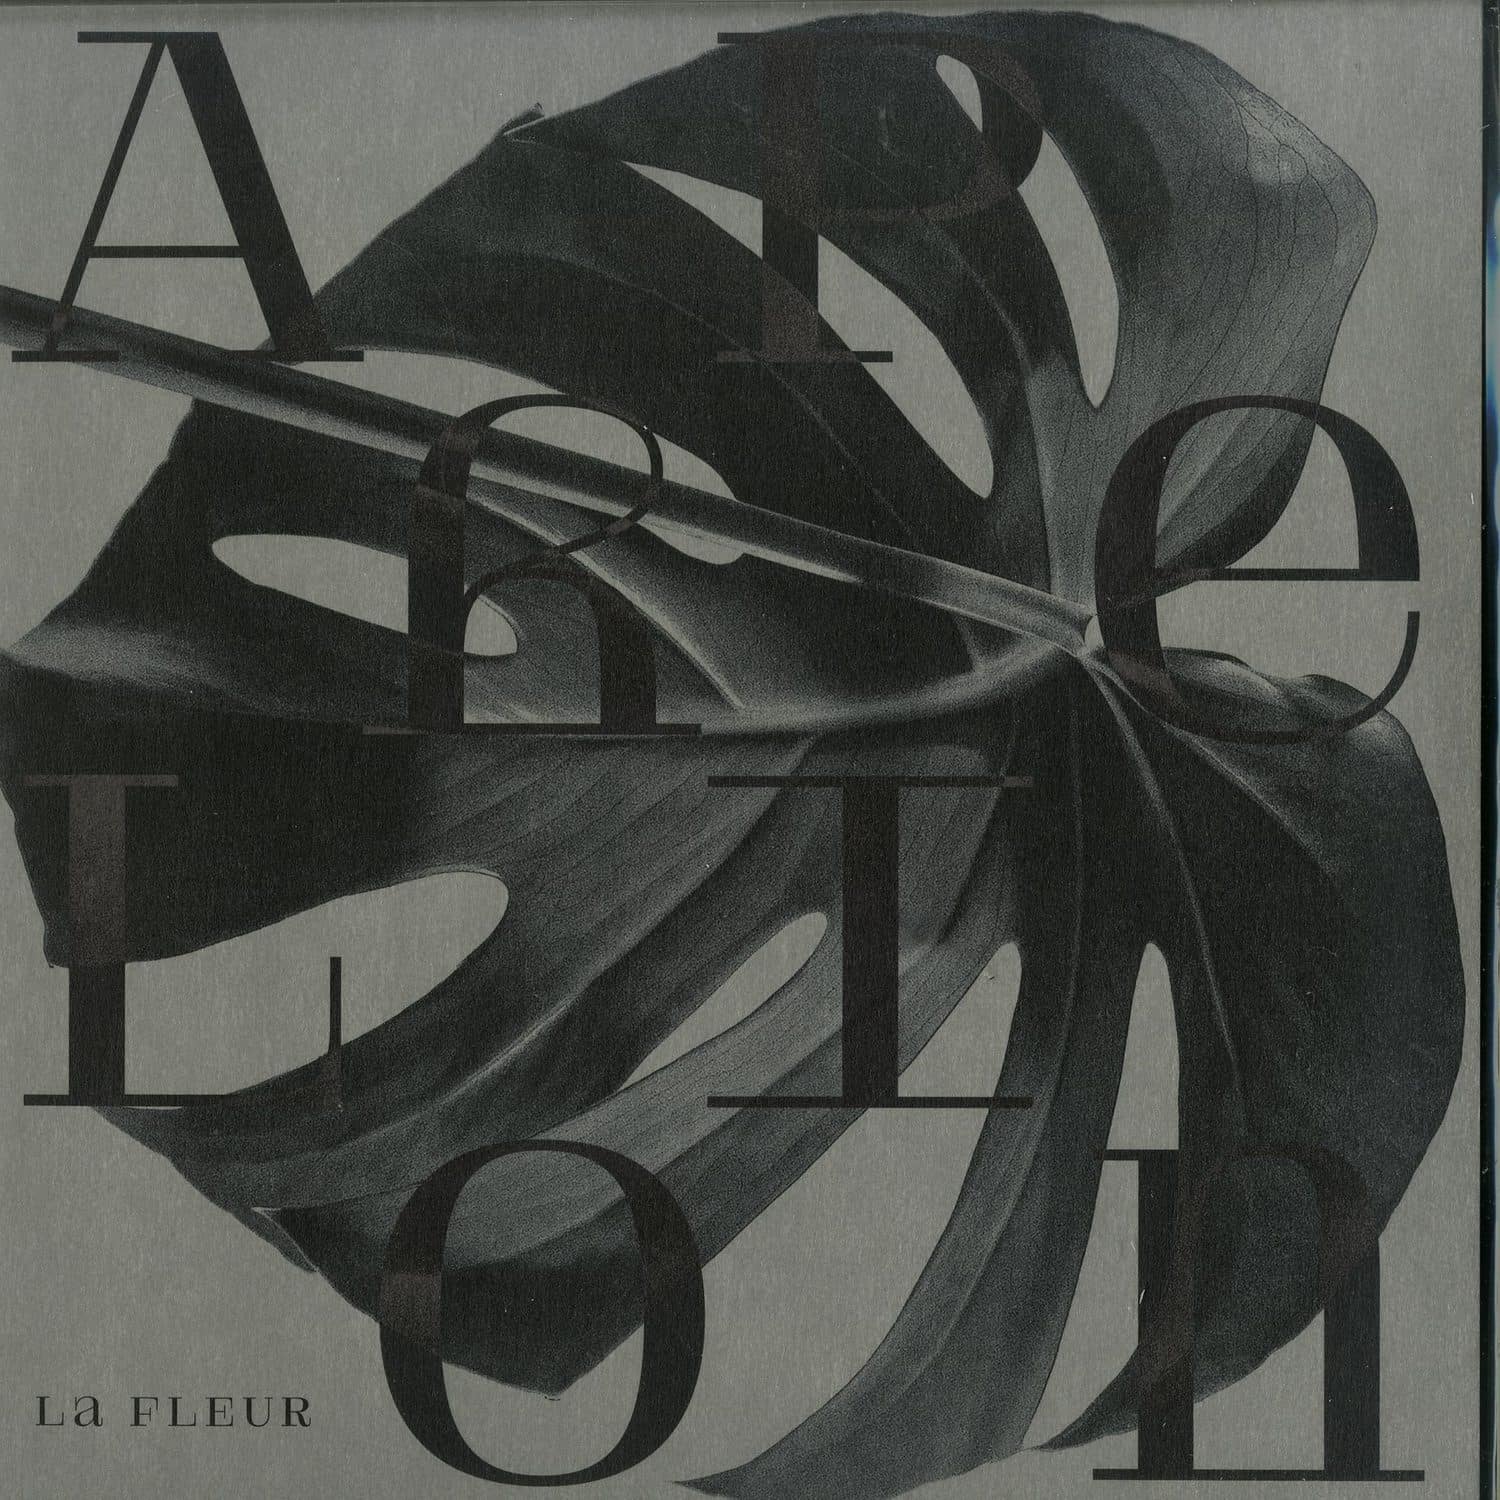 La Fleur - APHELION EP